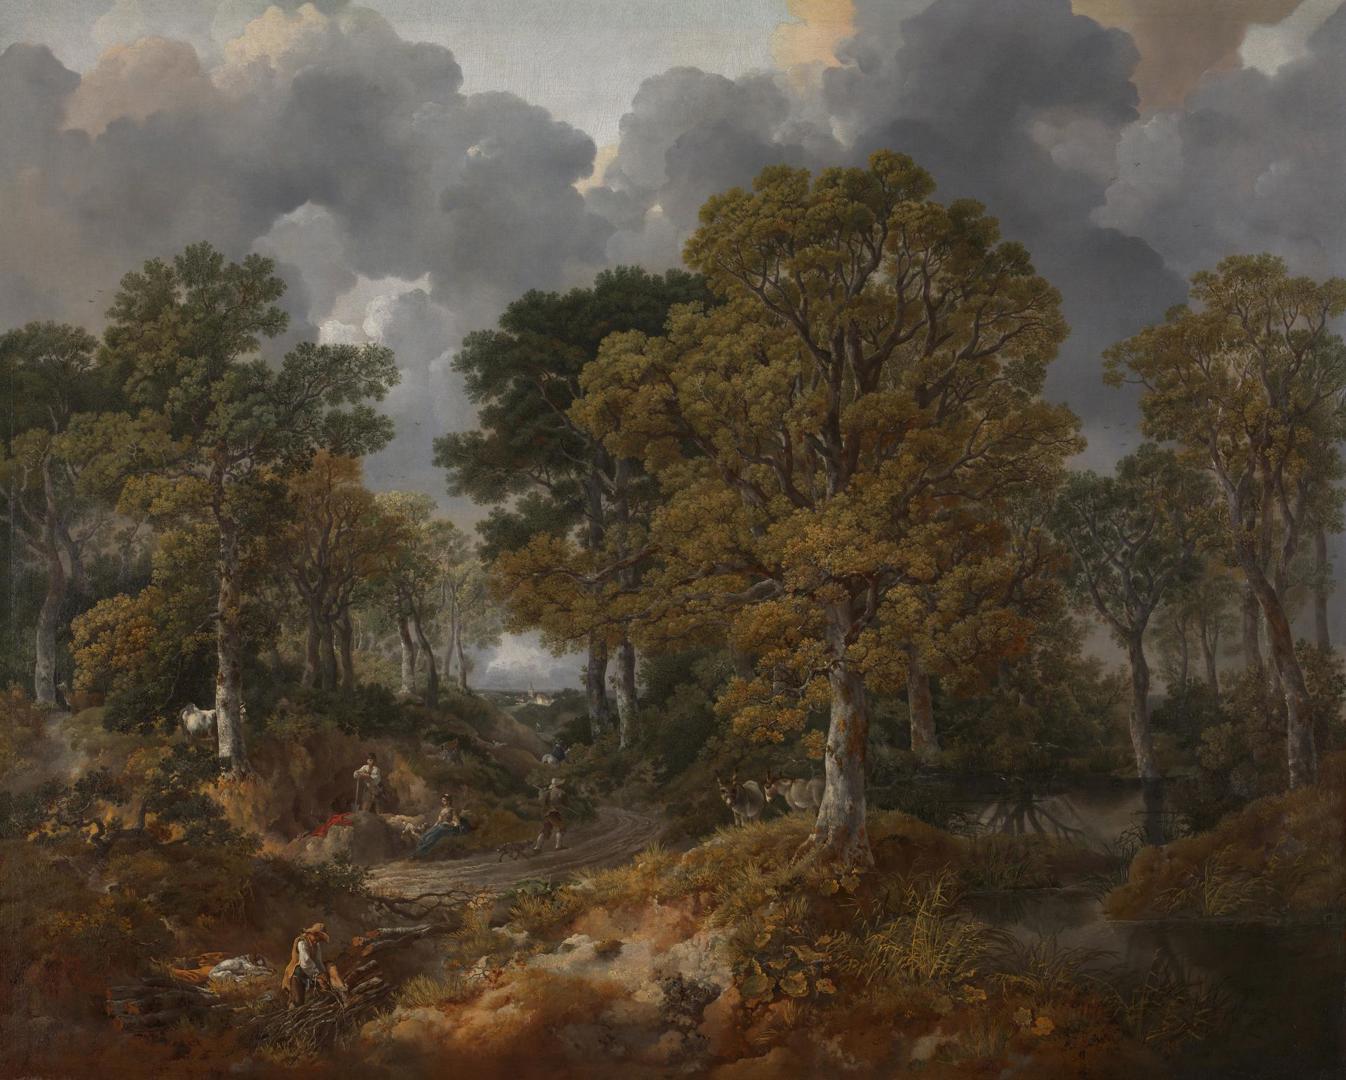 Cornard Wood, near Sudbury, Suffolk by Thomas Gainsborough